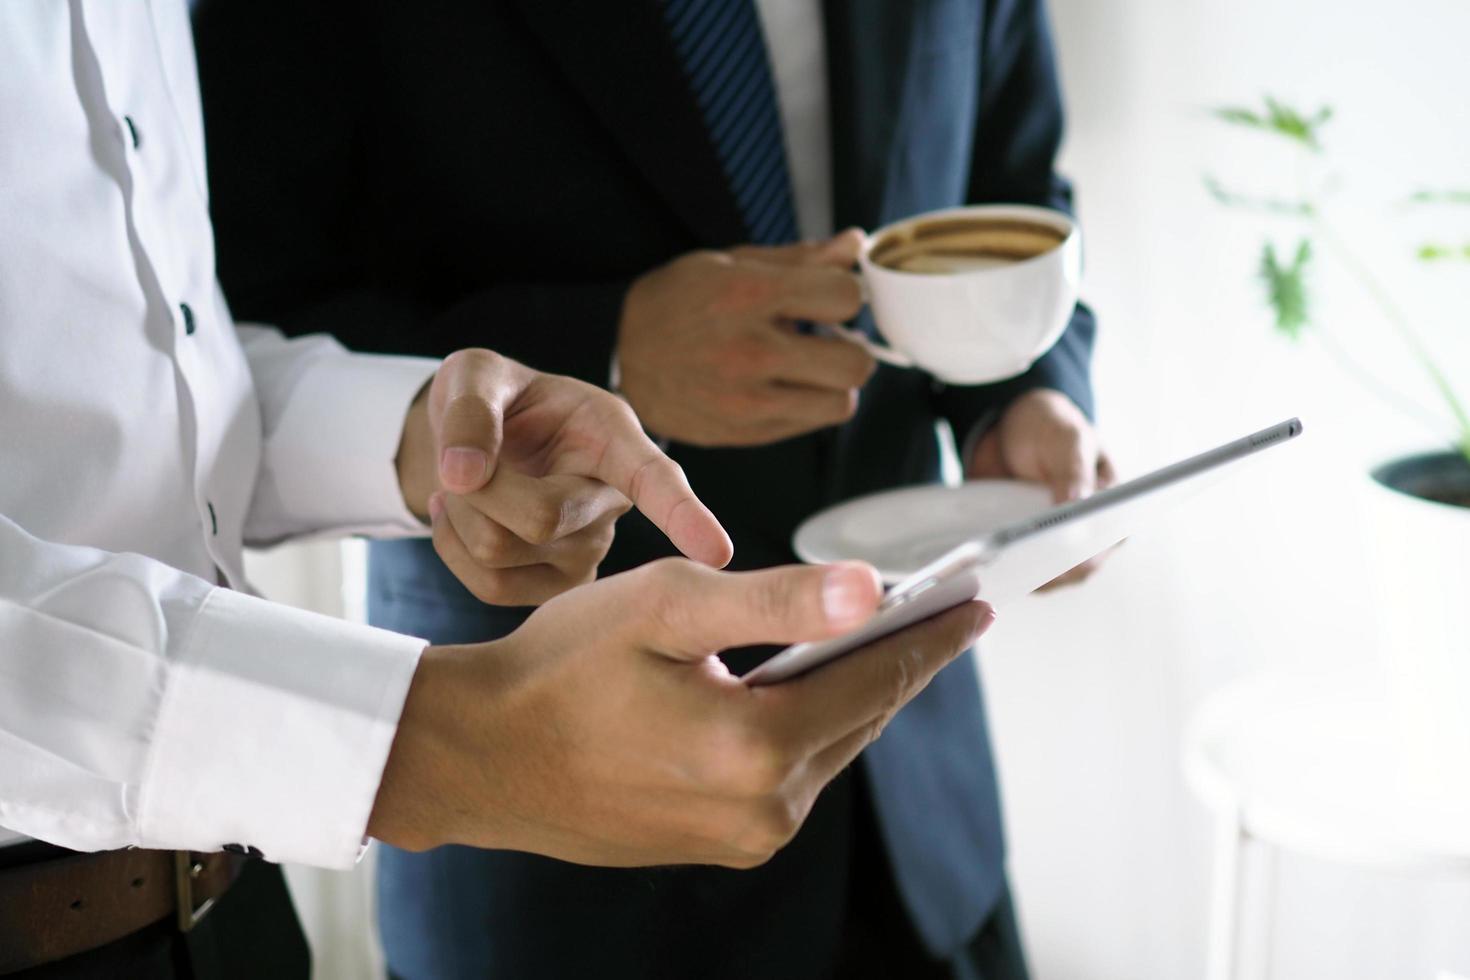 empresários apresentam seus trabalhos aos executivos por meio de tablets sensíveis ao toque. com informações on-line, conveniente para pesquisar foto